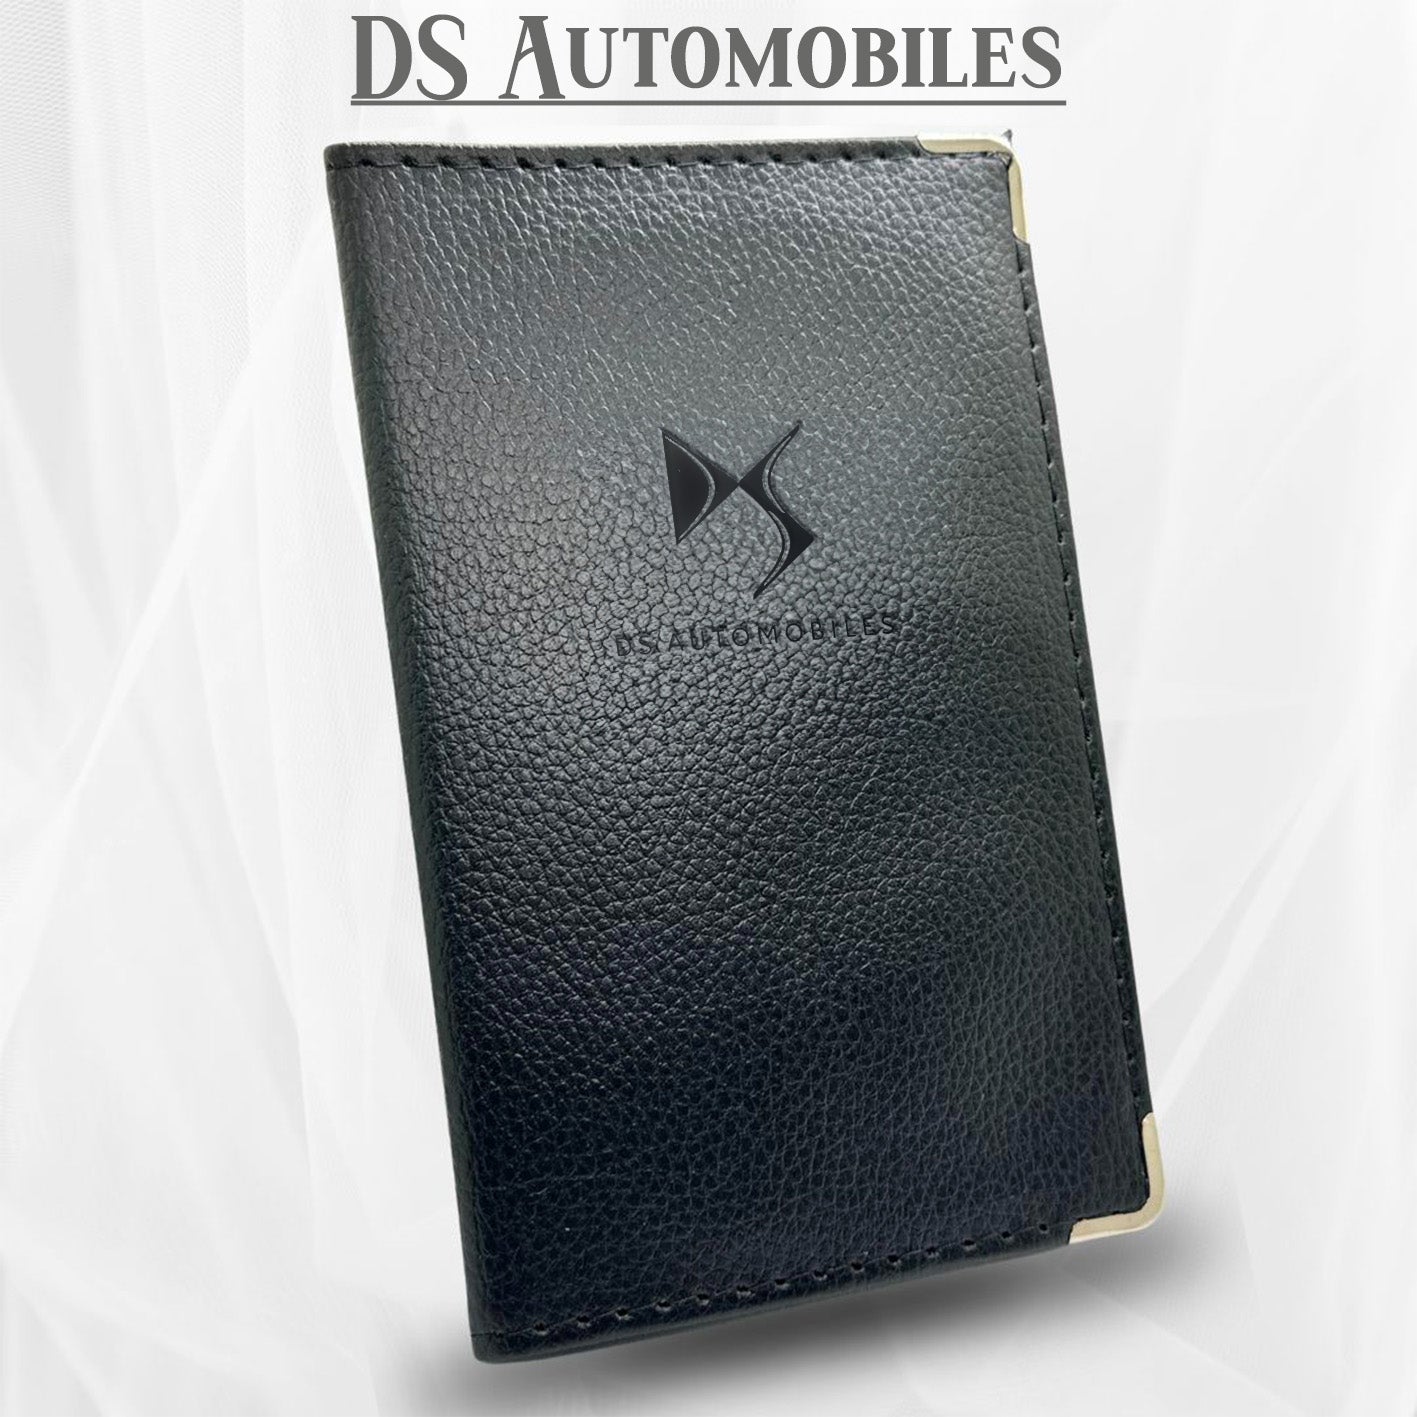 Porte carte grise<br> DS Automobiles